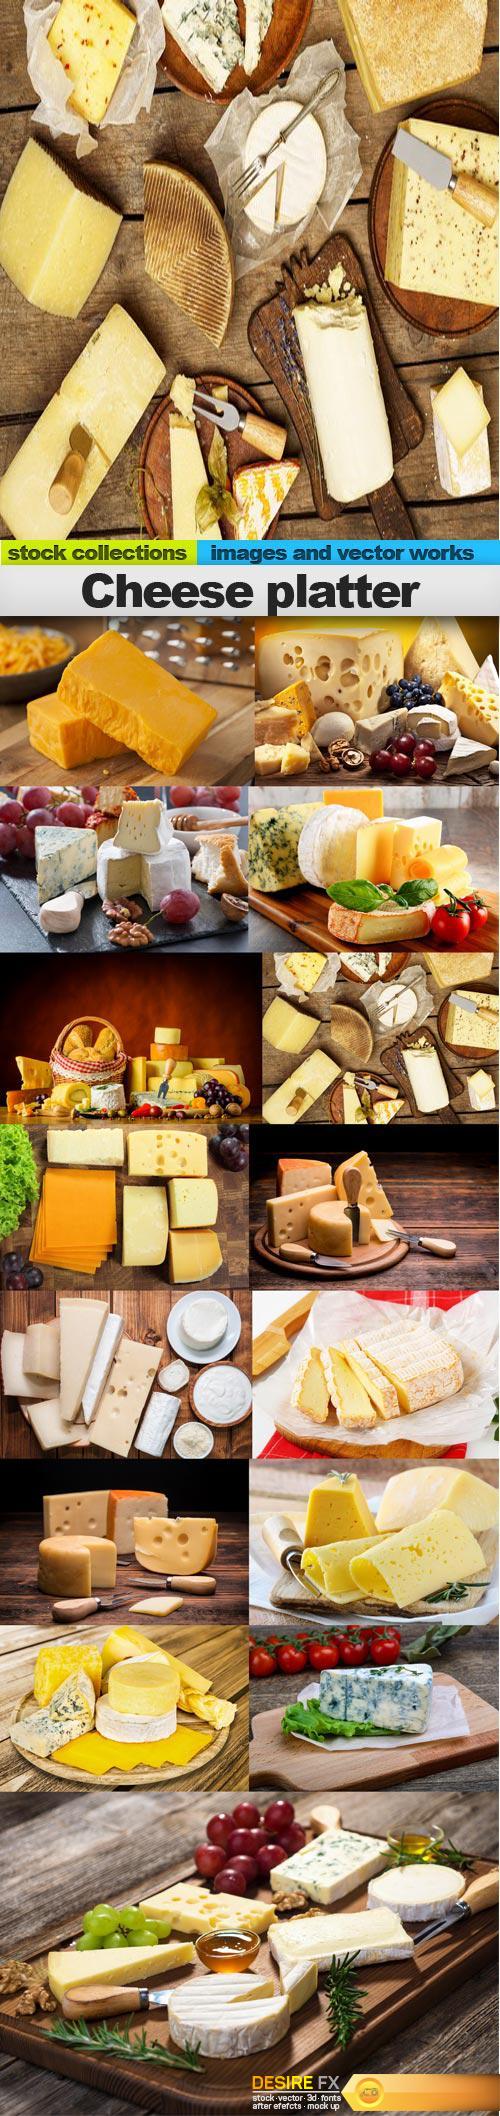 Cheese platter, 15 x UHQ JPEG